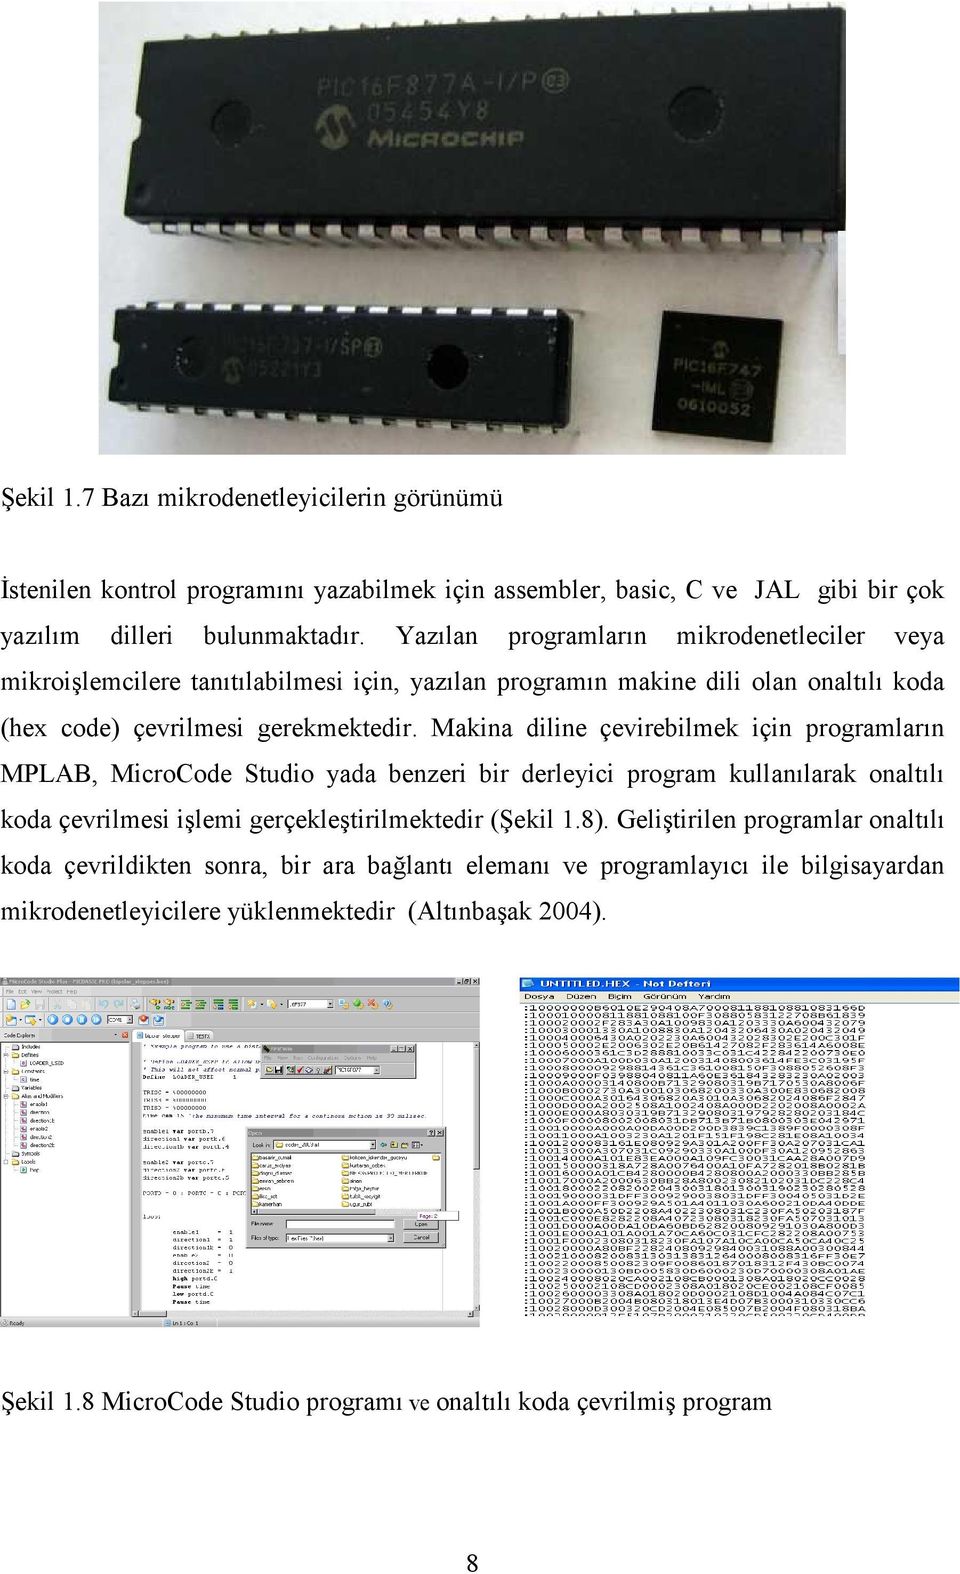 Makina diline çevirebilmek için programların MPLAB, MicroCode Studio yada benzeri bir derleyici program kullanılarak onaltılı koda çevrilmesi işlemi gerçekleştirilmektedir (Şekil 1.8).